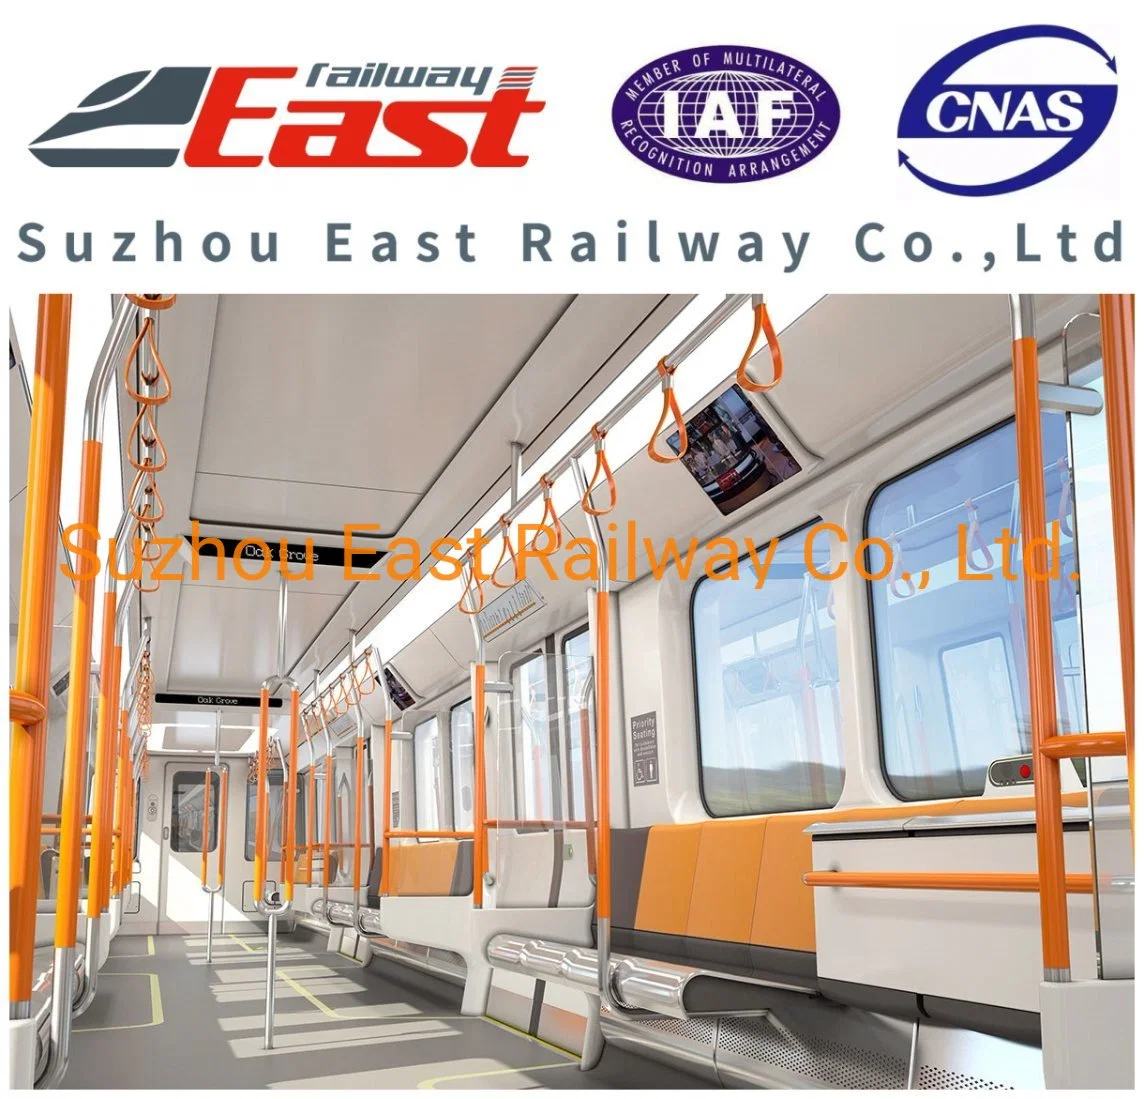 Passageiro ferroviário de alta qualidade Eastrailway Interior de trem para função diferente